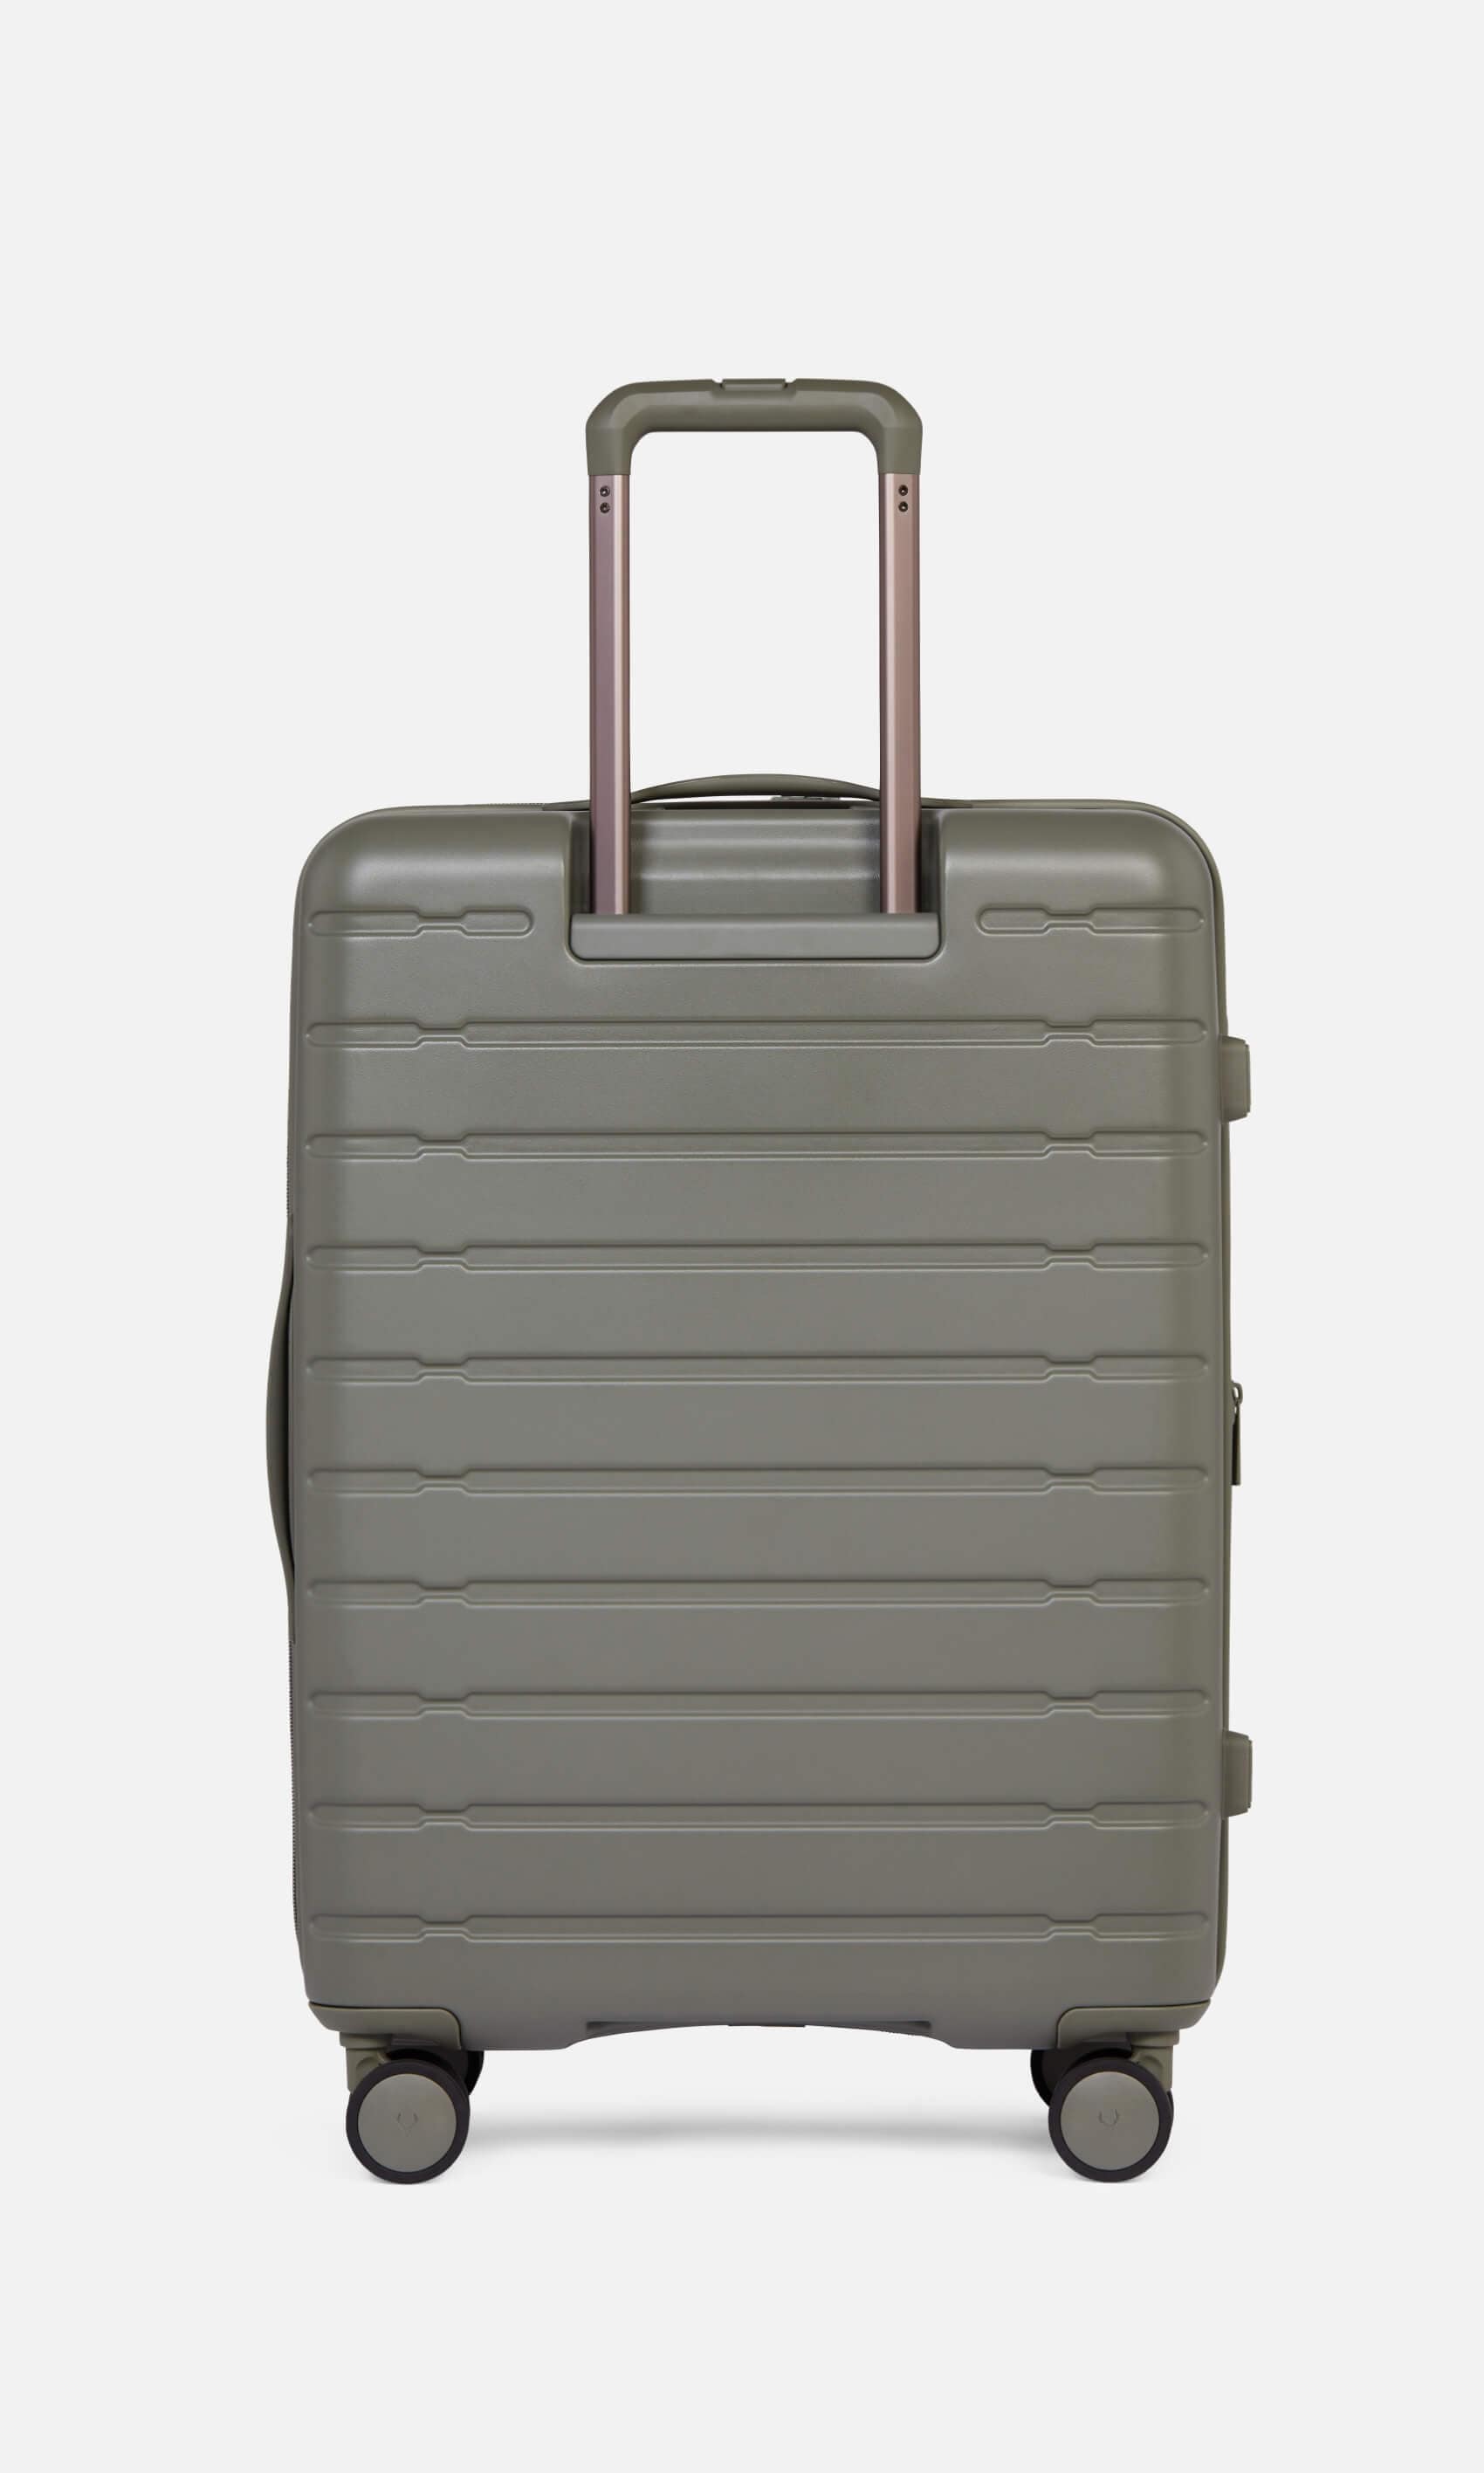 Antler Luggage -  Stamford medium in field green - Hard Suitcases Stamford Medium Suitcase Green | Hard Luggage | Antler UK